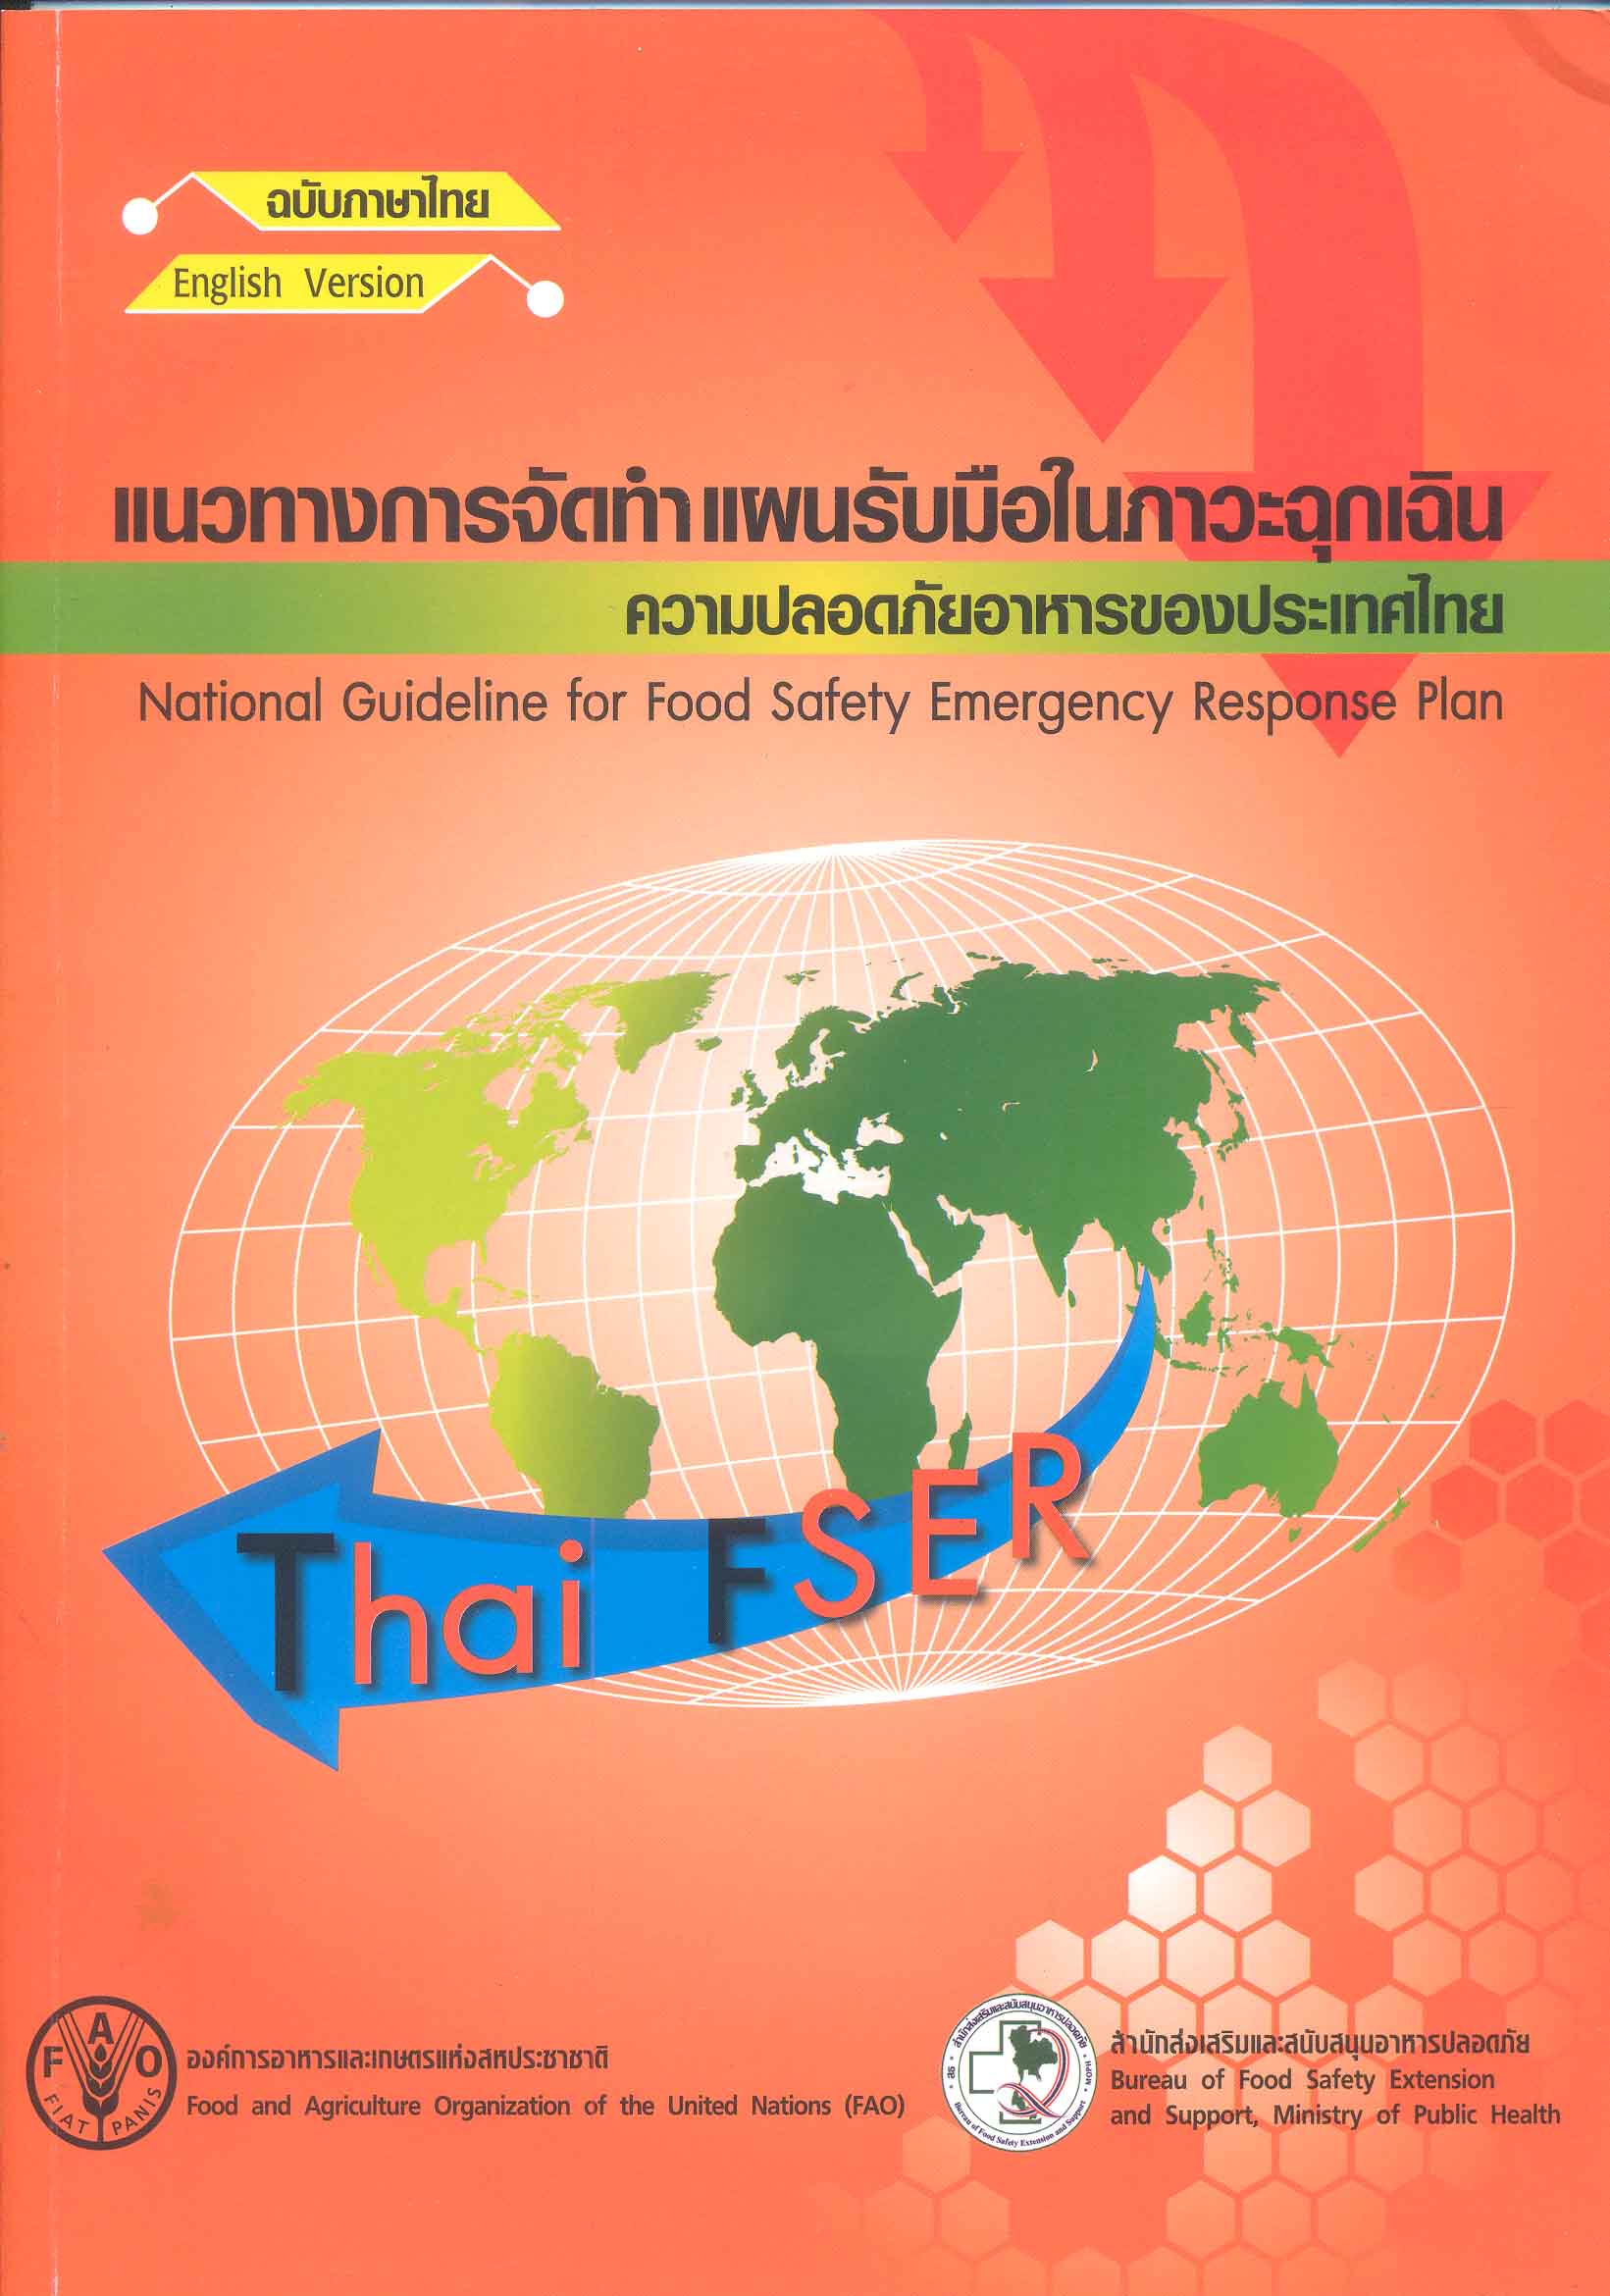 แนวทางการจัดทำแผนรับมือในภาวะฉุกเฉิน ความปลอดภัยอาหารของประเทศไทย